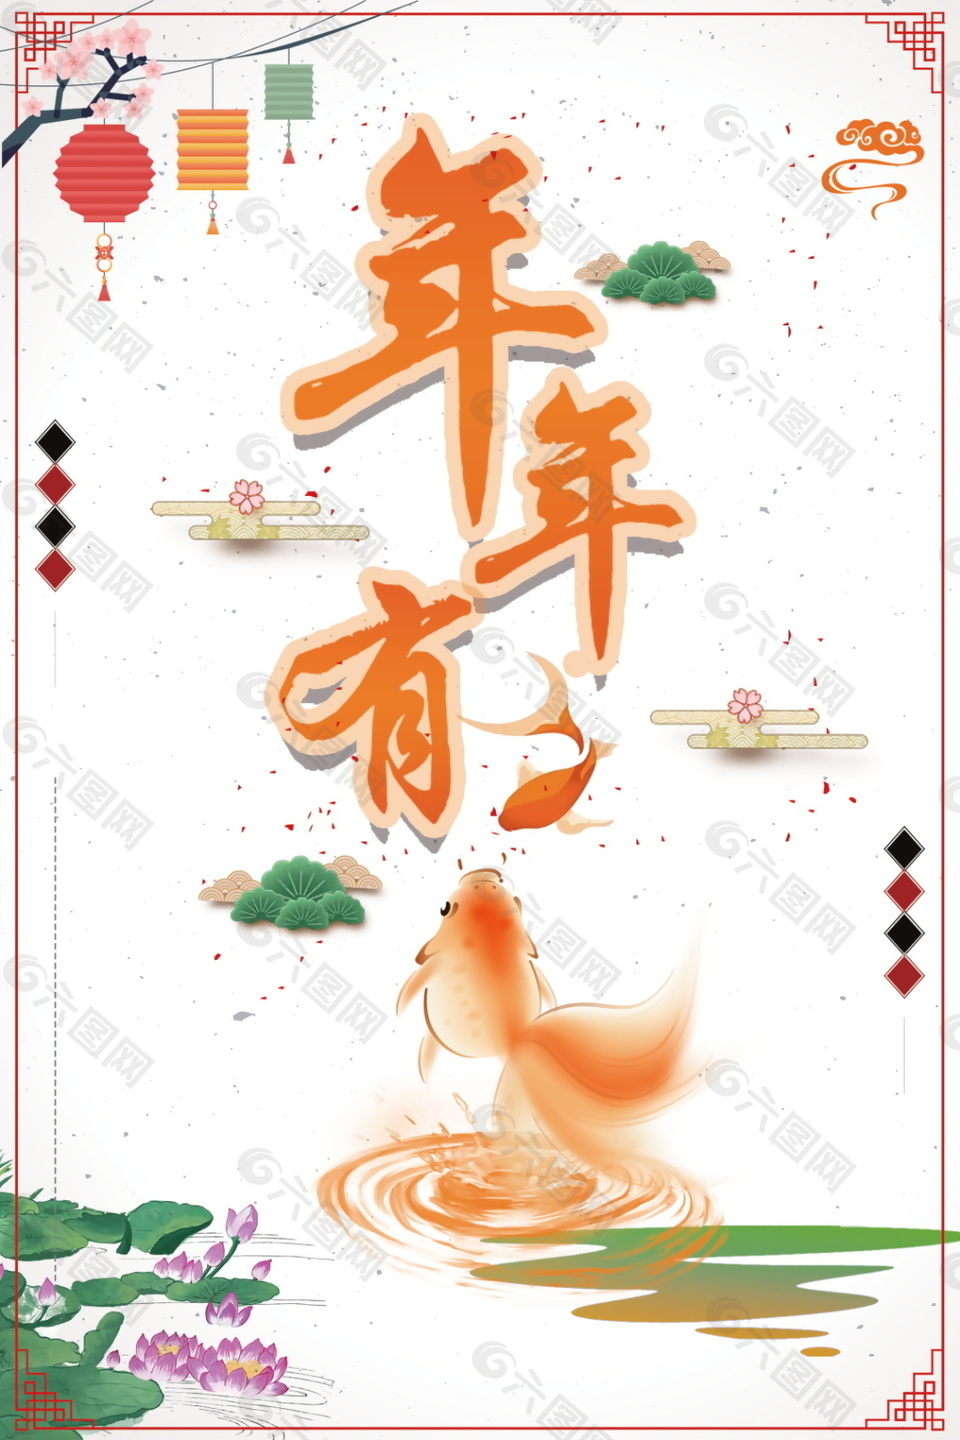 2018狗年春节海报设计